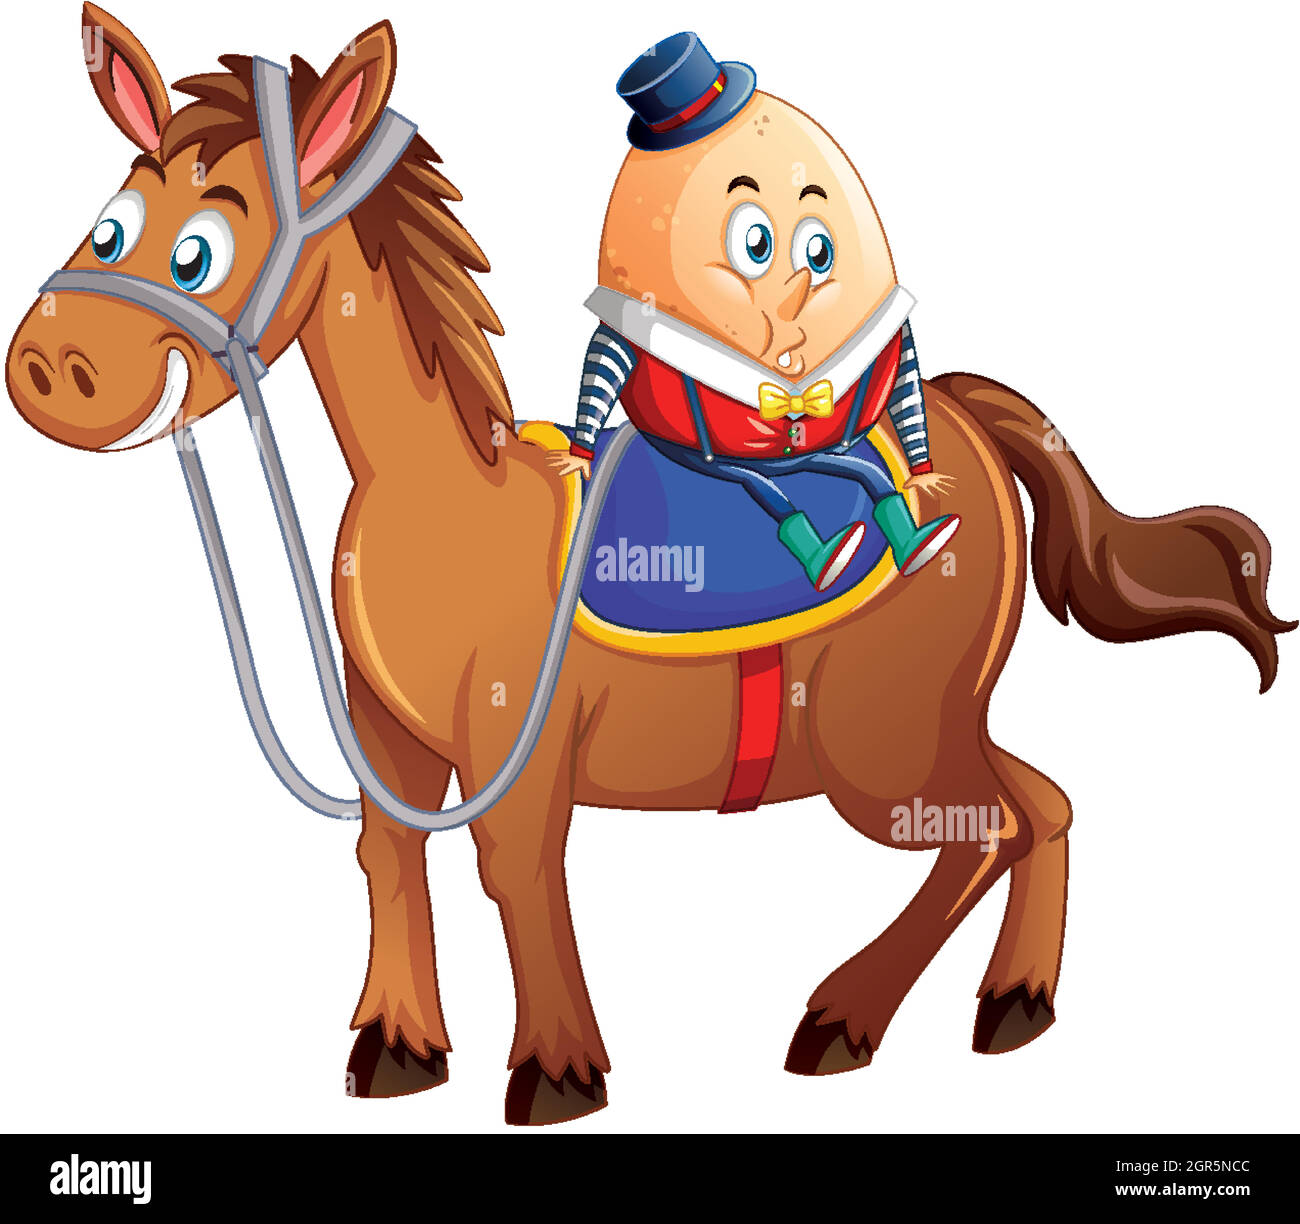 humpty dumpty egg à cheval sur un bakground blanc Illustration de Vecteur